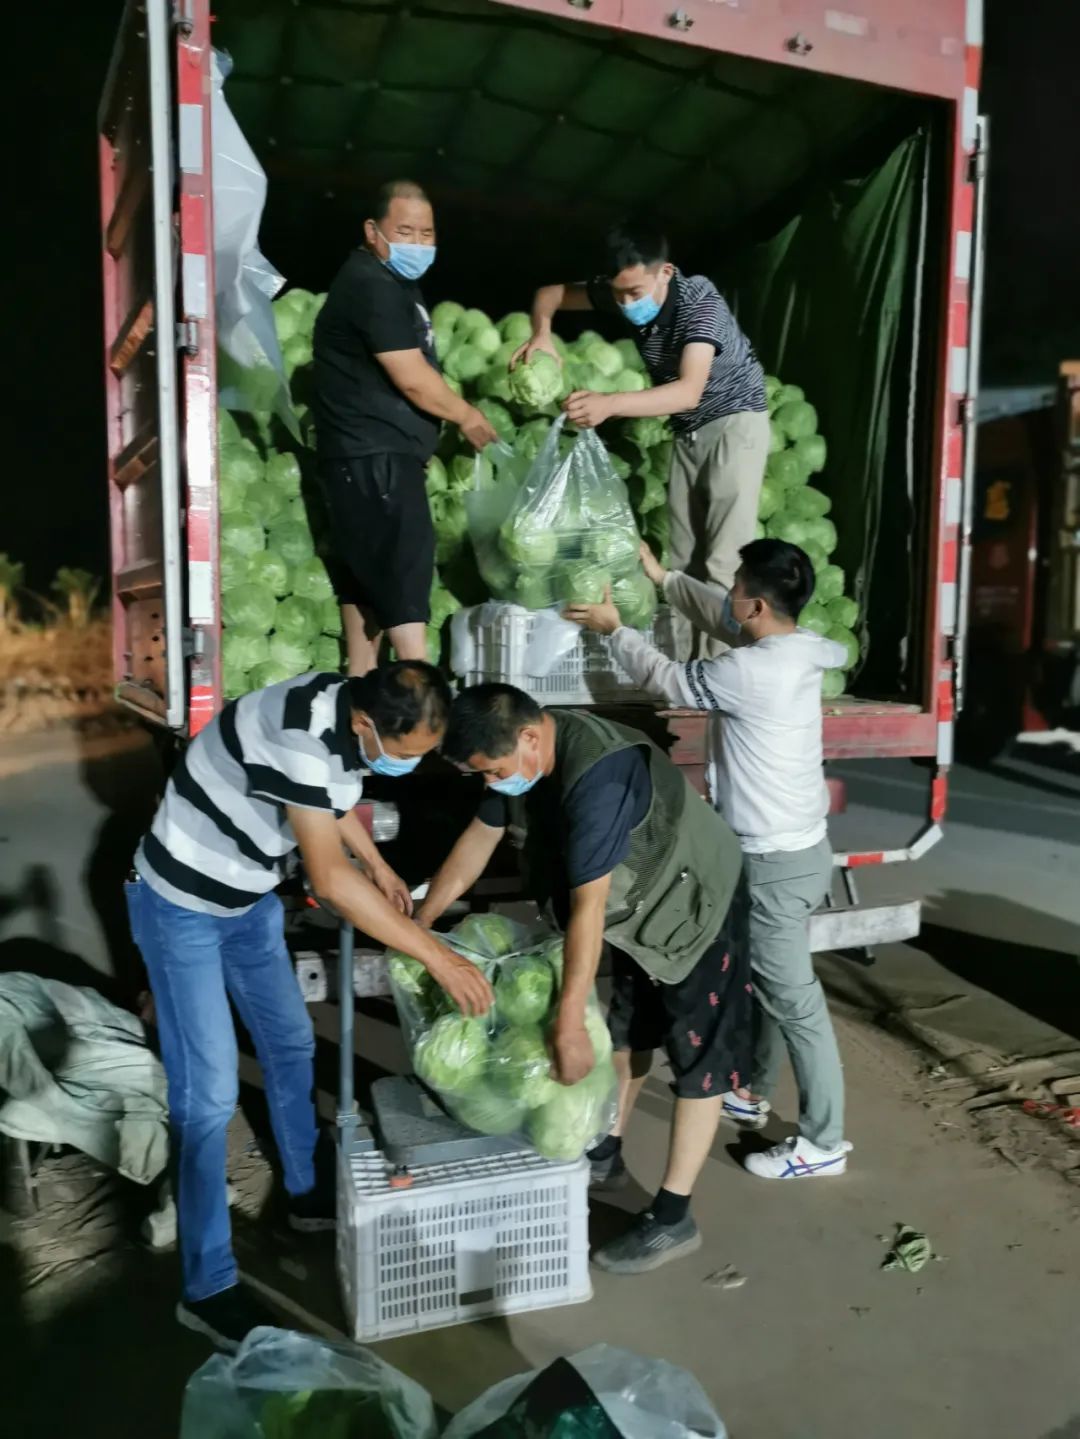  家乐福工作人员正在抓紧搬运蔬菜。图/受访者提供